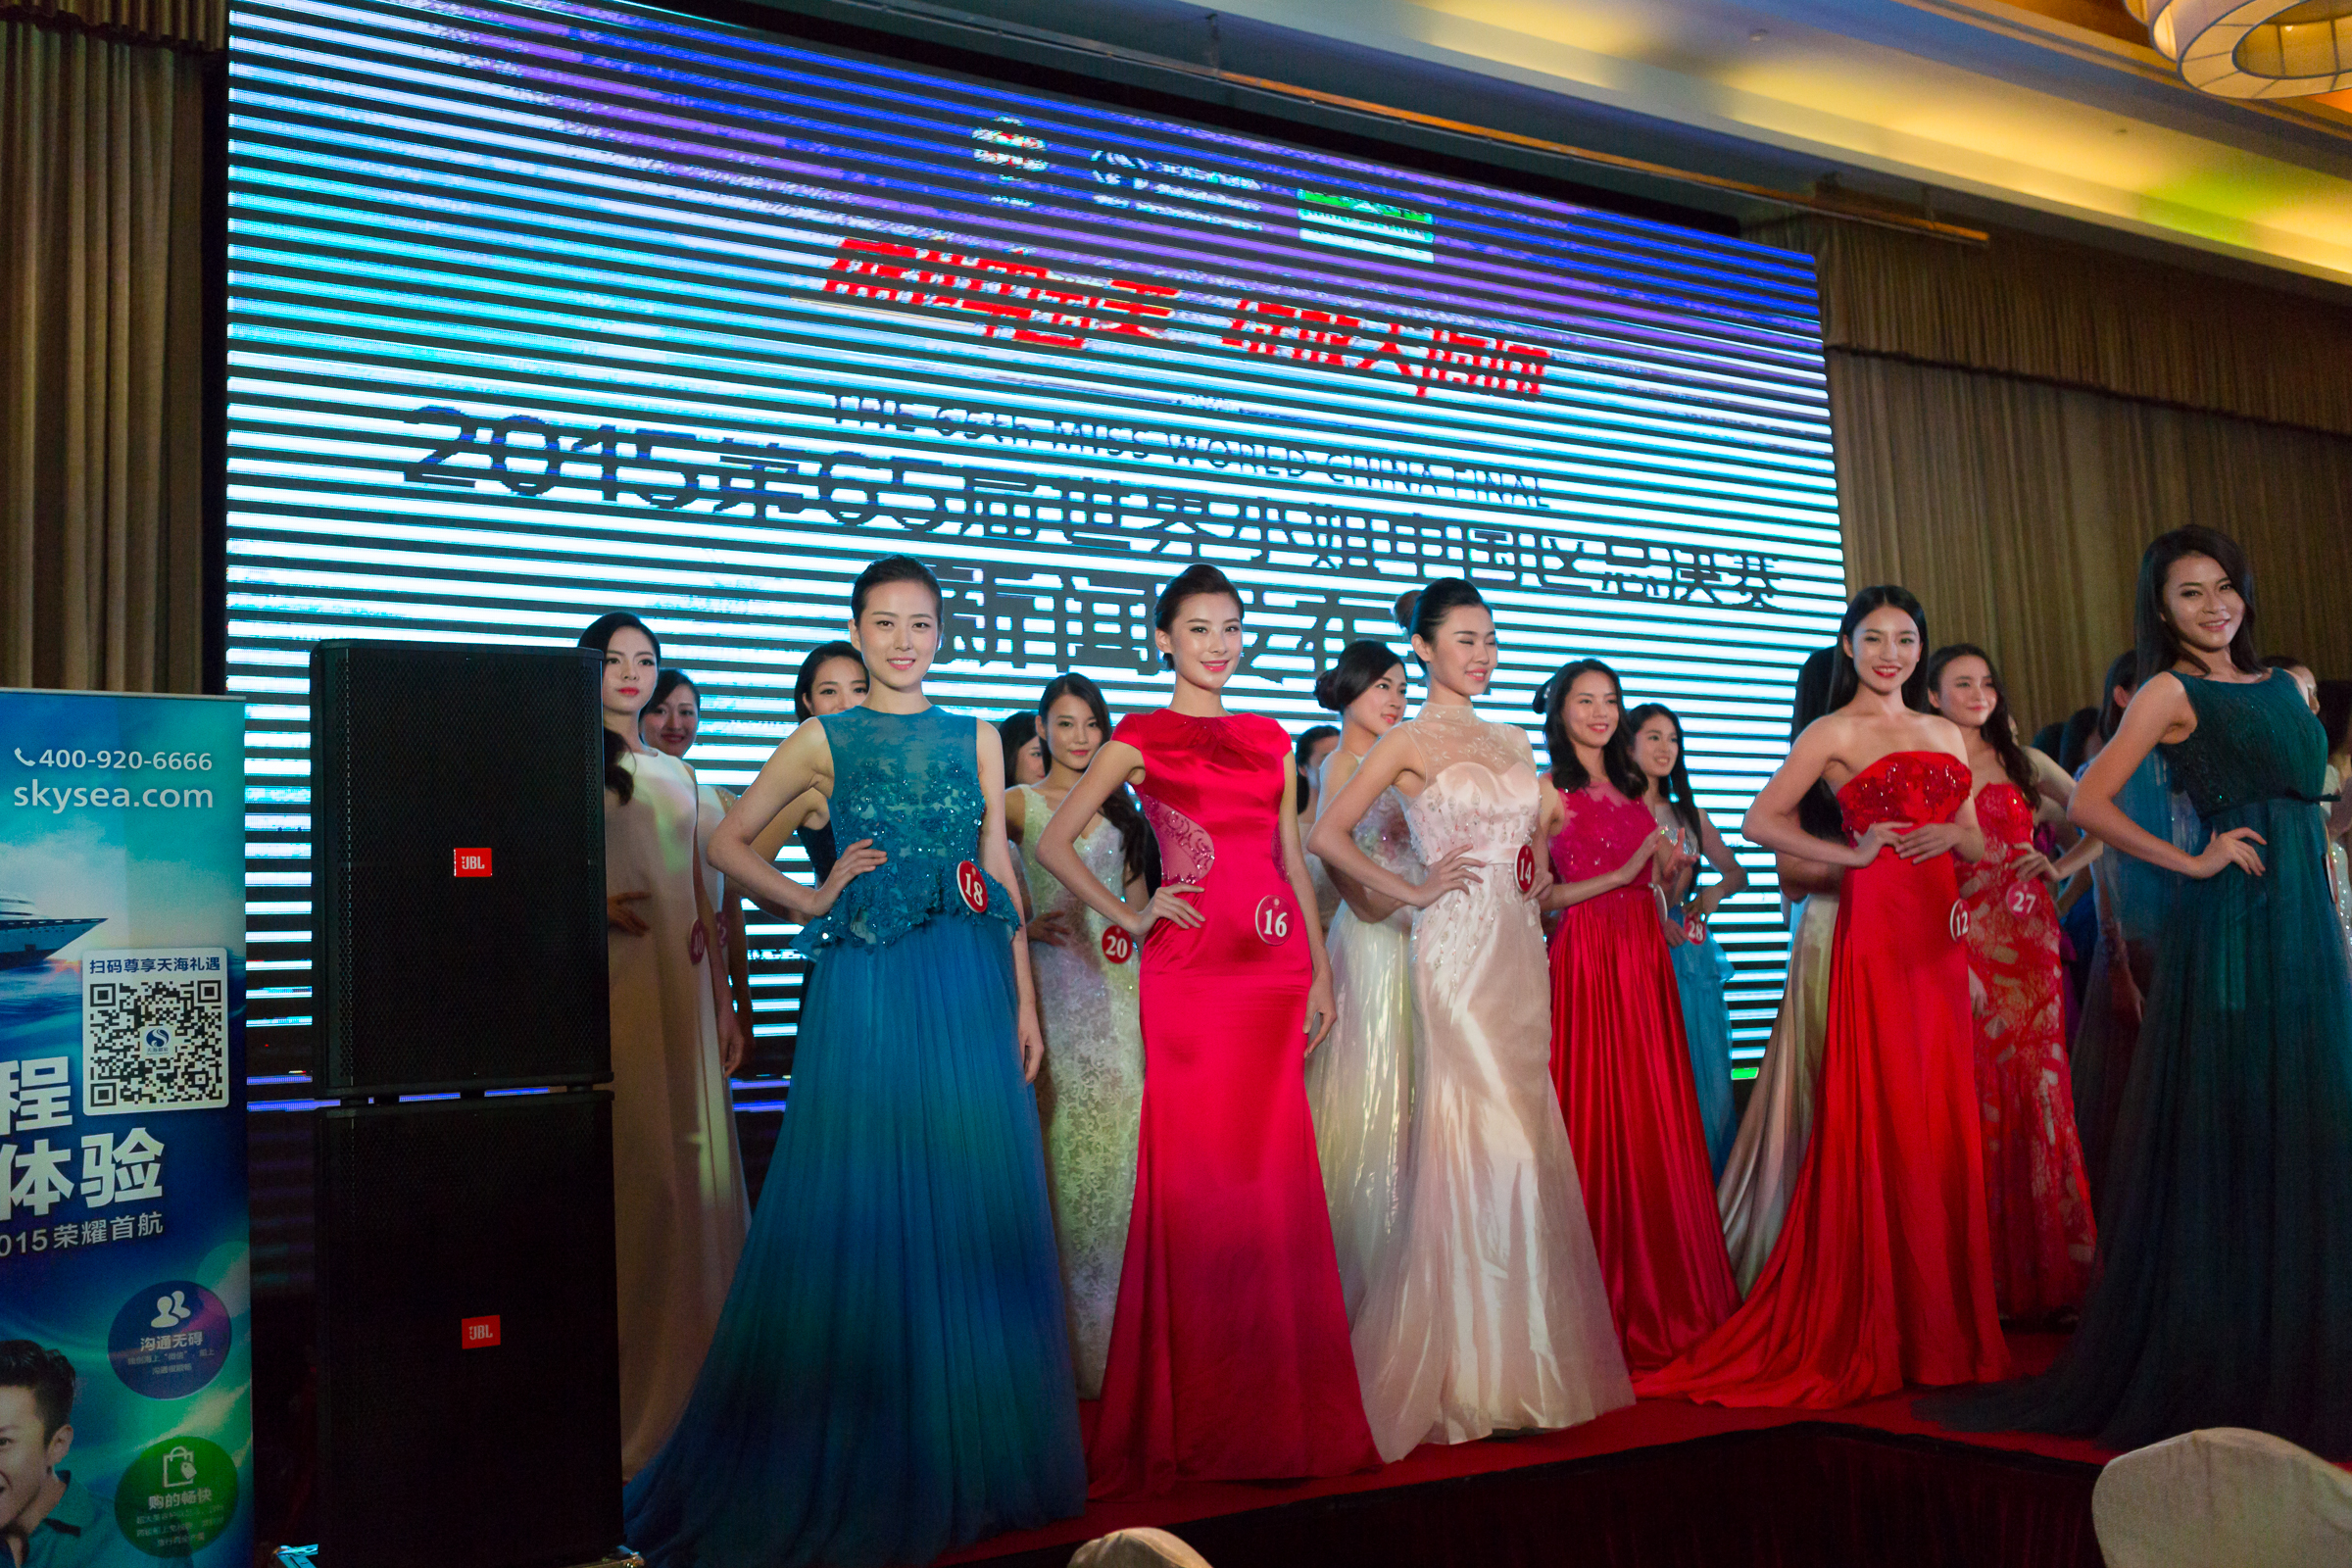 2015 | Miss World China | Final 12/11 - Page 3 005IJvz6gw1exr1ubxwglj31uo18gqv7